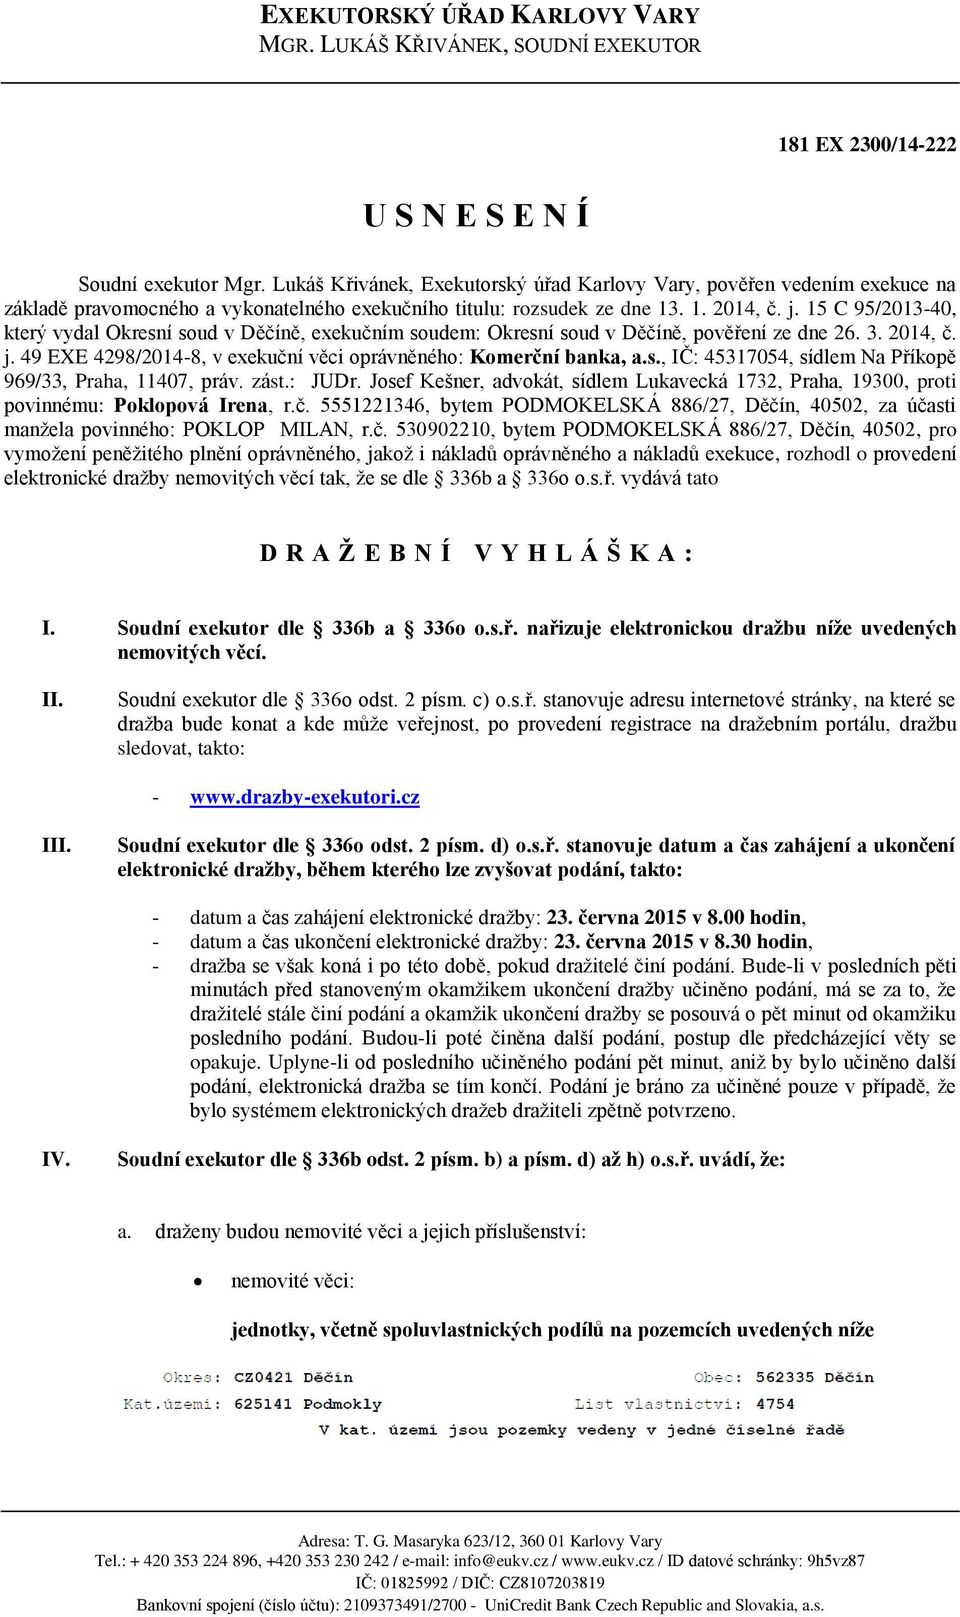 15 C 95/2013-40, který vydal Okresní soud v Děčíně, exekučním soudem: Okresní soud v Děčíně, pověření ze dne 26. 3. 2014, č. j. 49 EXE 4298/2014-8, v exekuční věci oprávněného: Komerční banka, a.s., IČ: 45317054, sídlem Na Příkopě 969/33, Praha, 11407, práv.